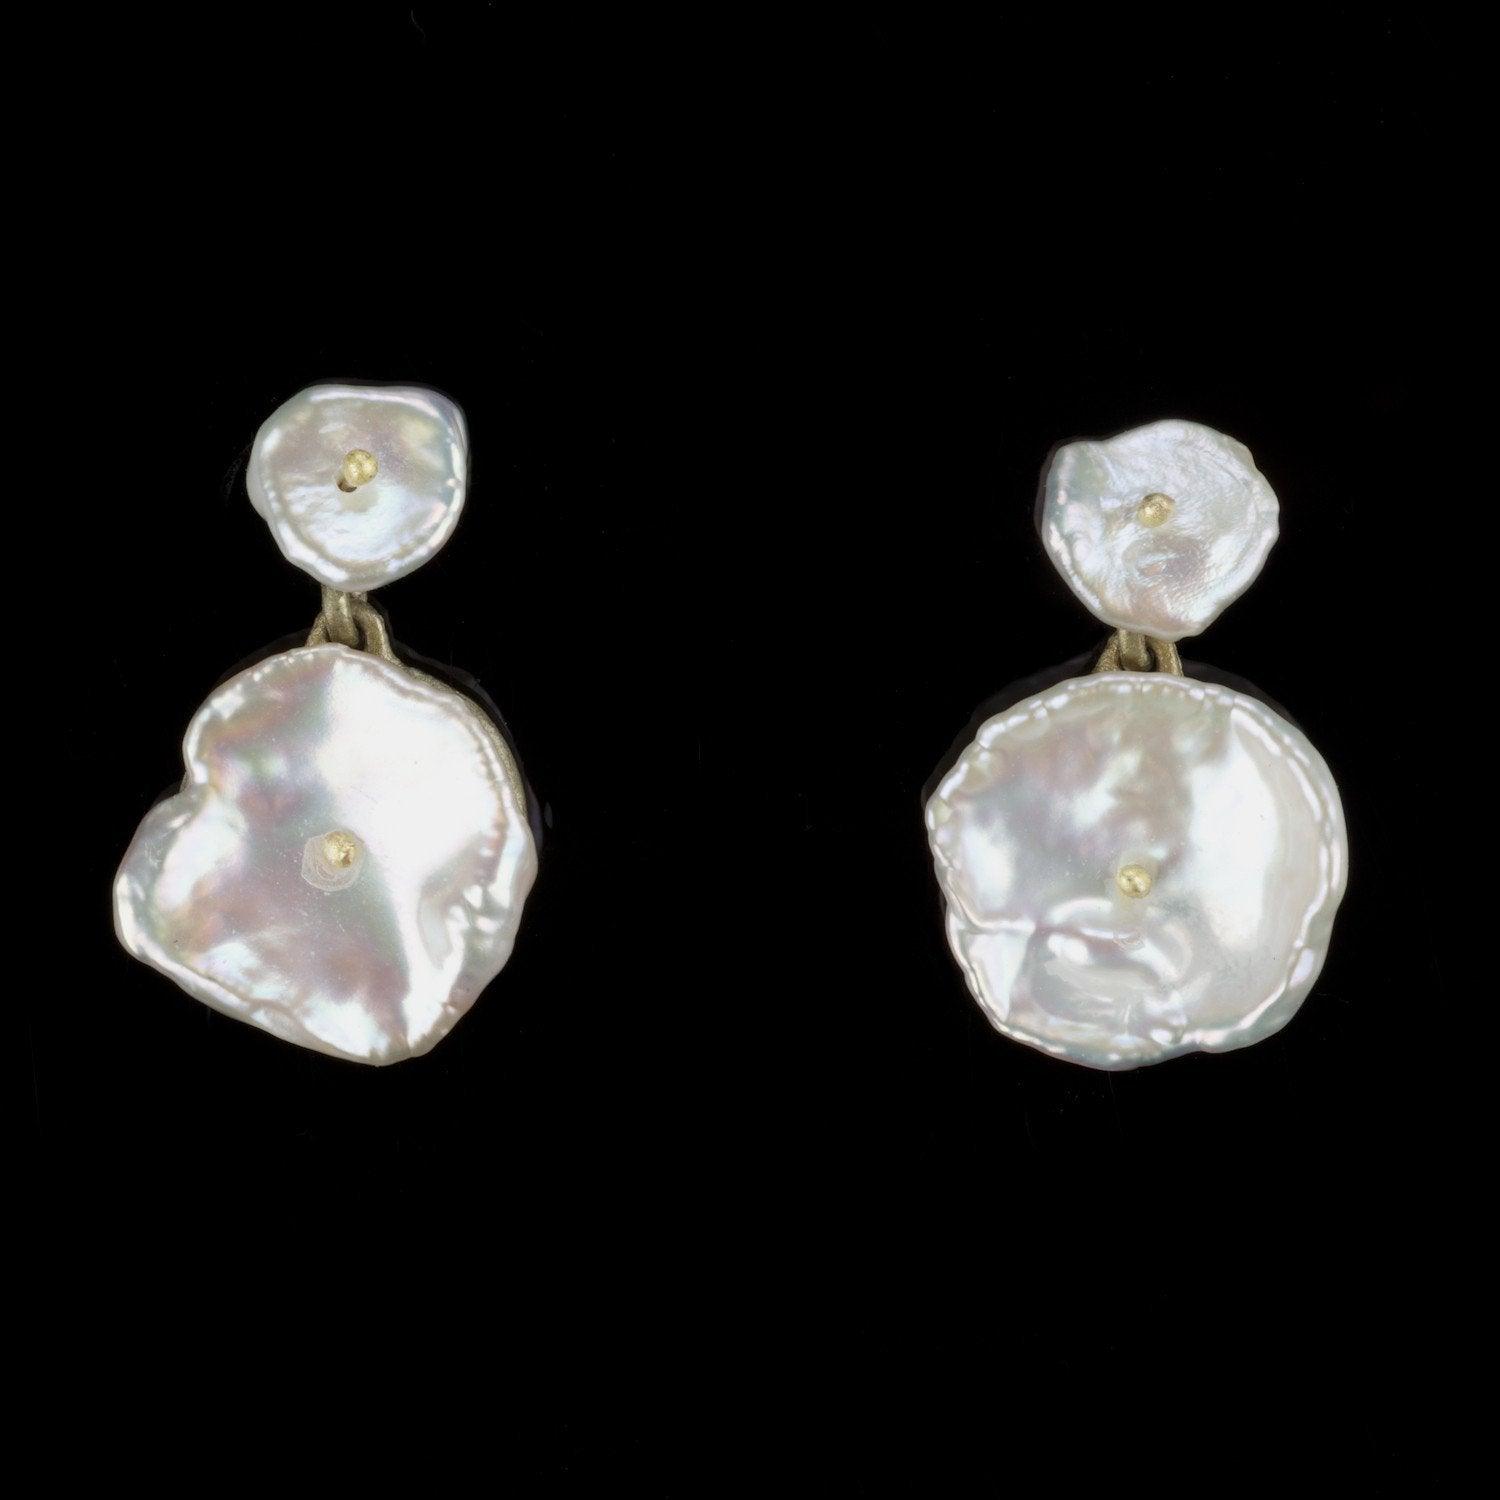 Silver Dollar Earrings - Post - Michael Michaud Jewellery